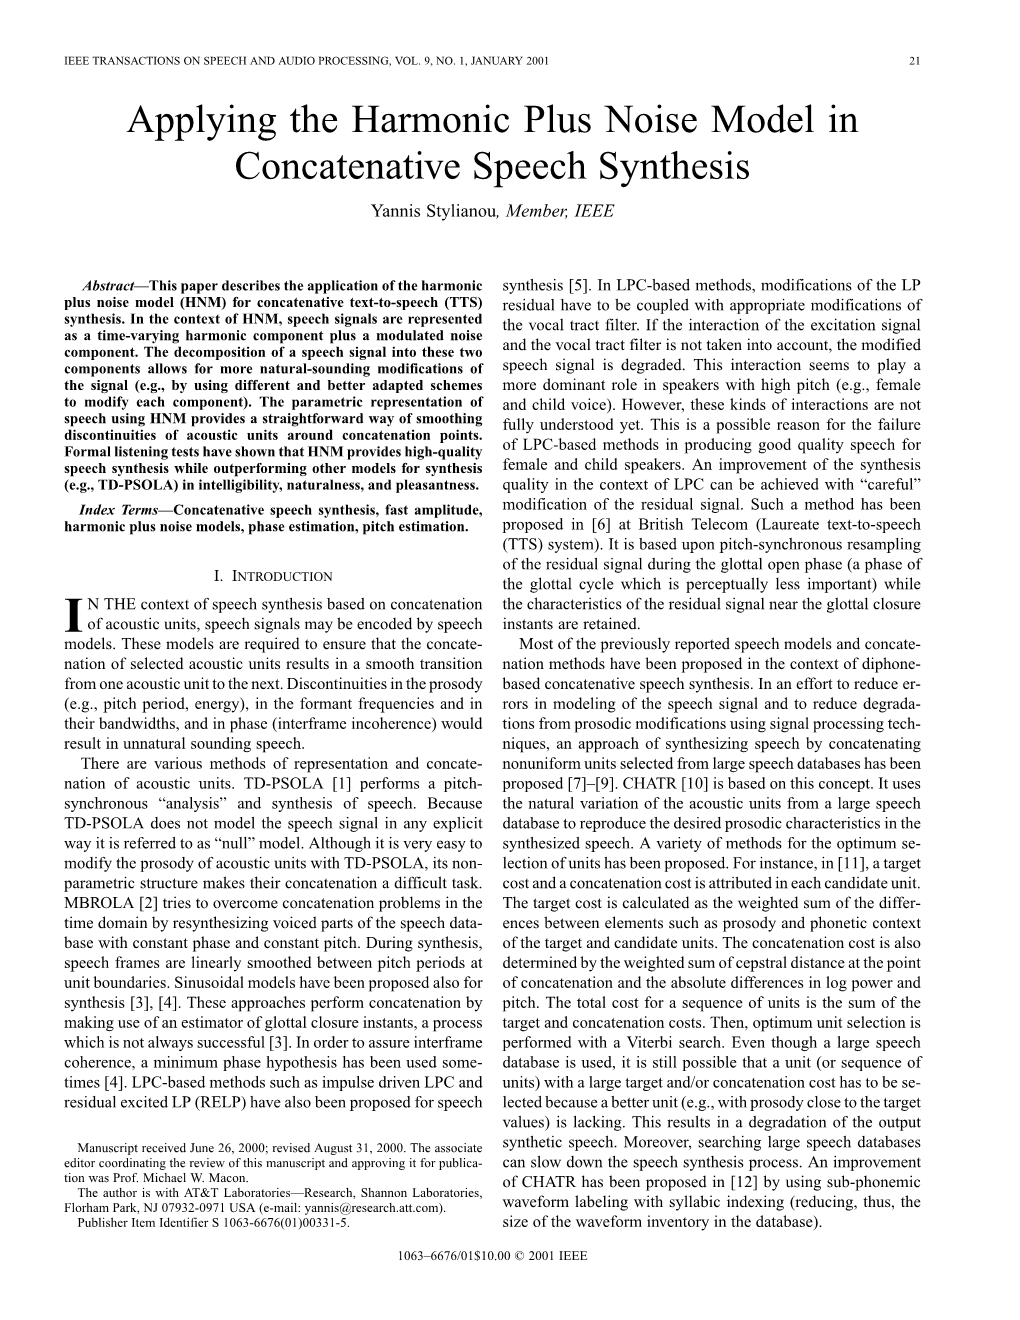 Applying the Harmonic Plus Noise Model in Concatenative Speech Synthesis Yannis Stylianou, Member, IEEE